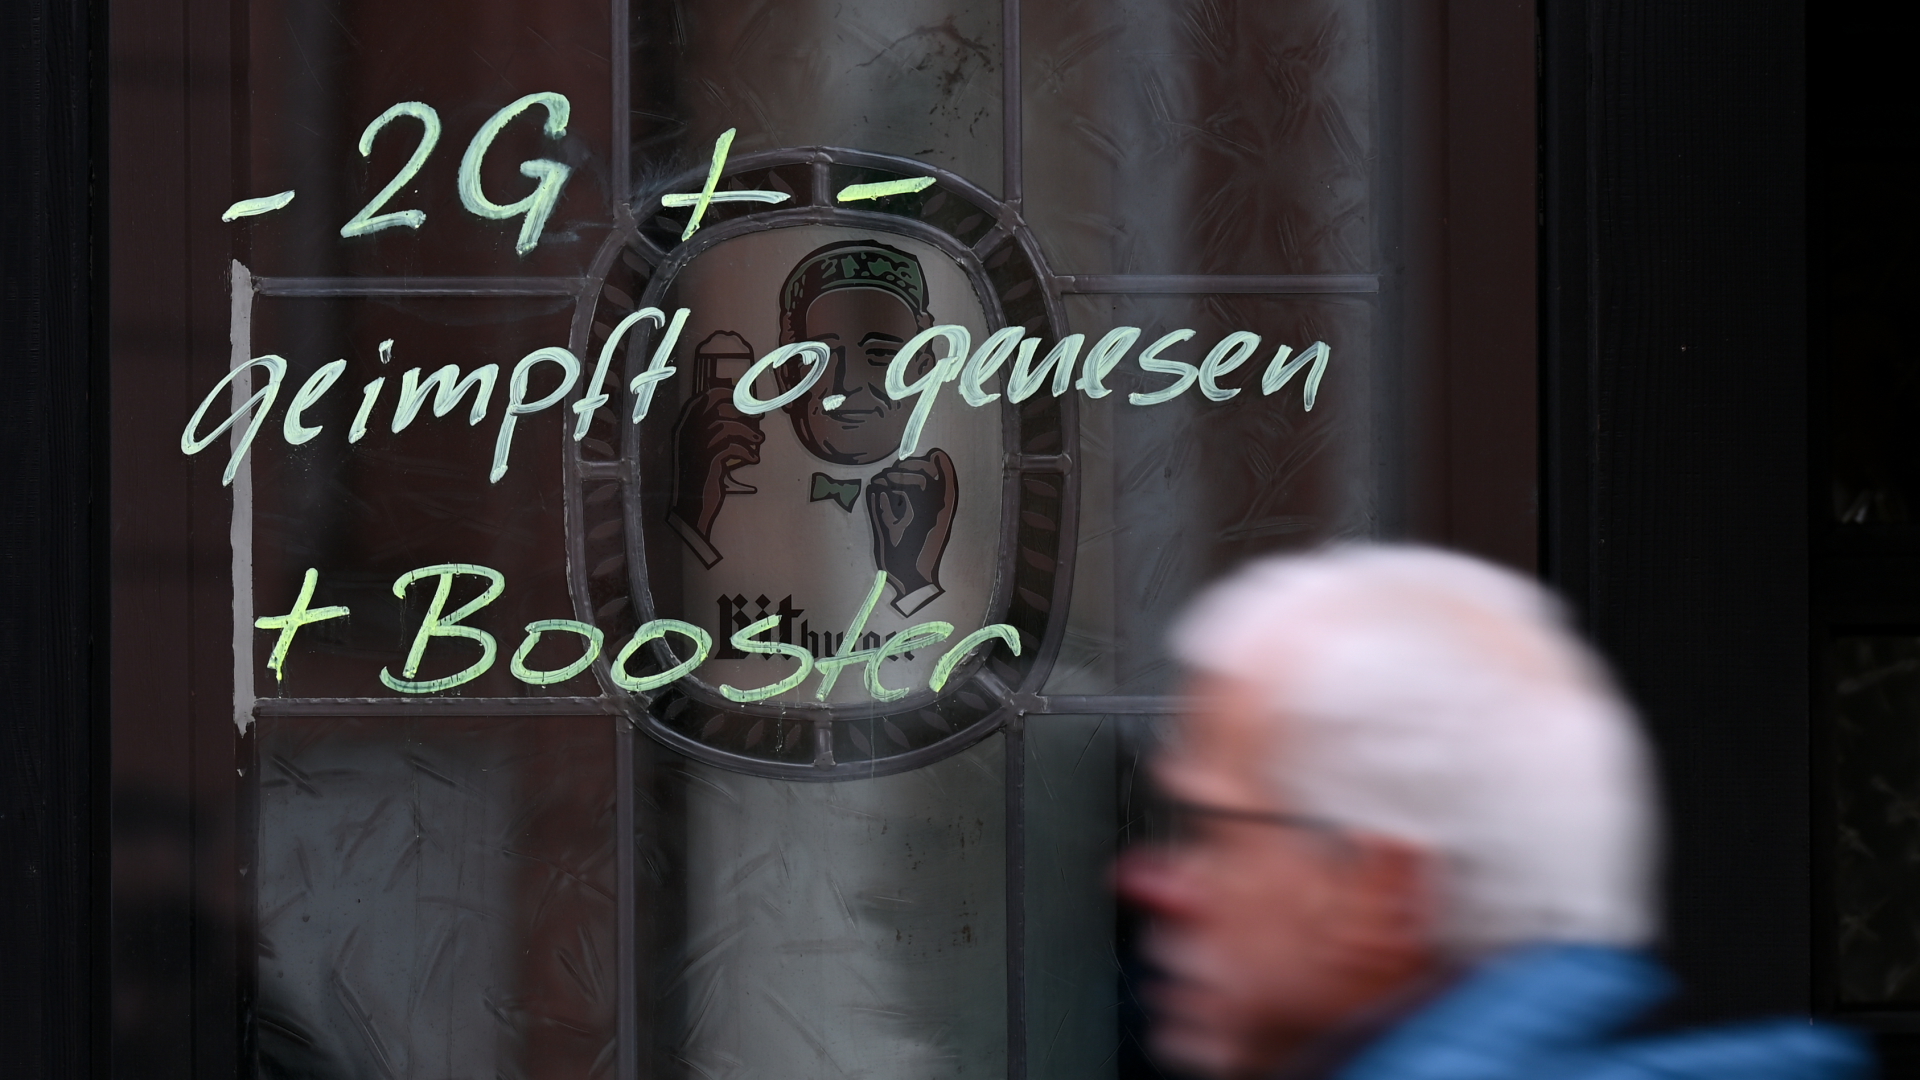 Am Fenster der Traditionskneipe "Zur Andau" in der Mainzer Innenstadt ist der Hinweis "-2G + - geimpft o. genesen + | dpa